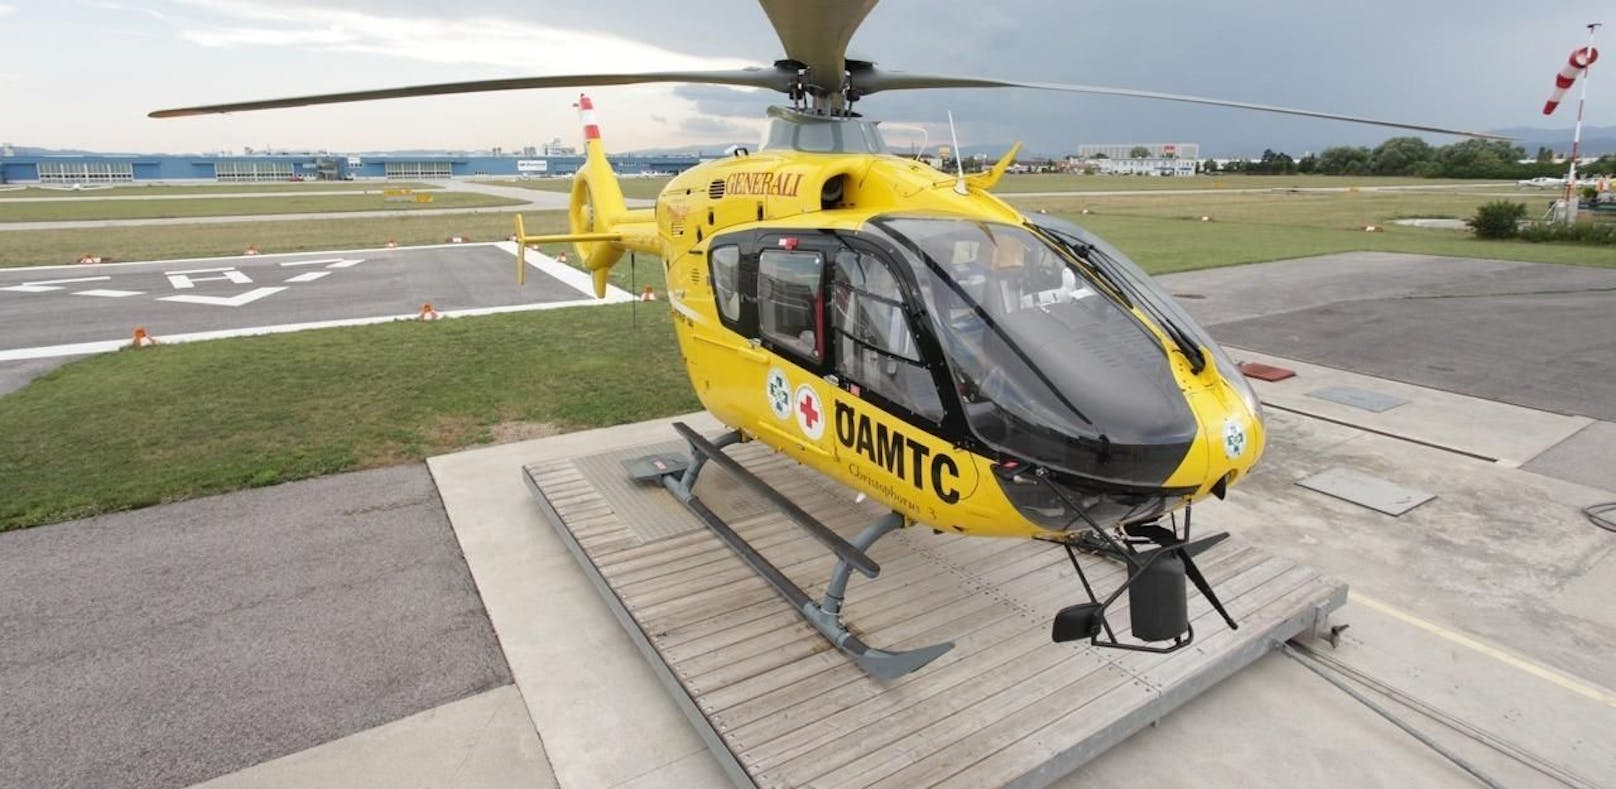 Decke stürzte ein: Mann per Helikopter ins Spital